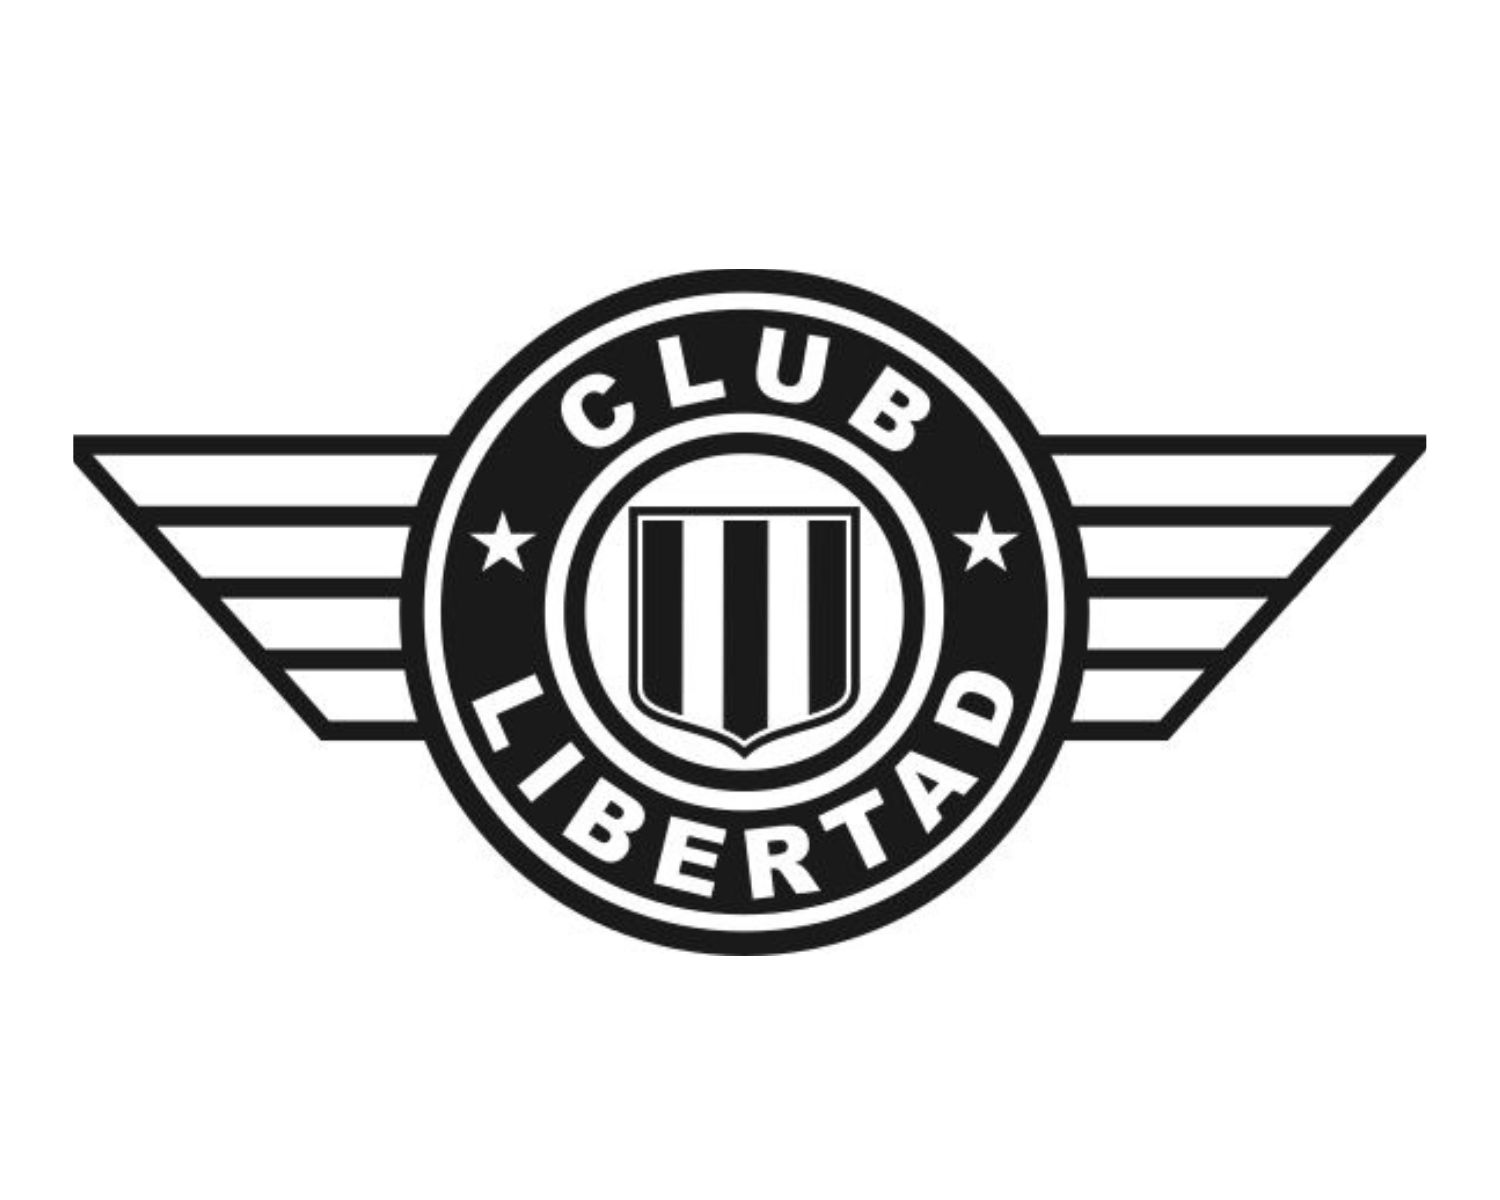 club-libertad-16-football-club-facts